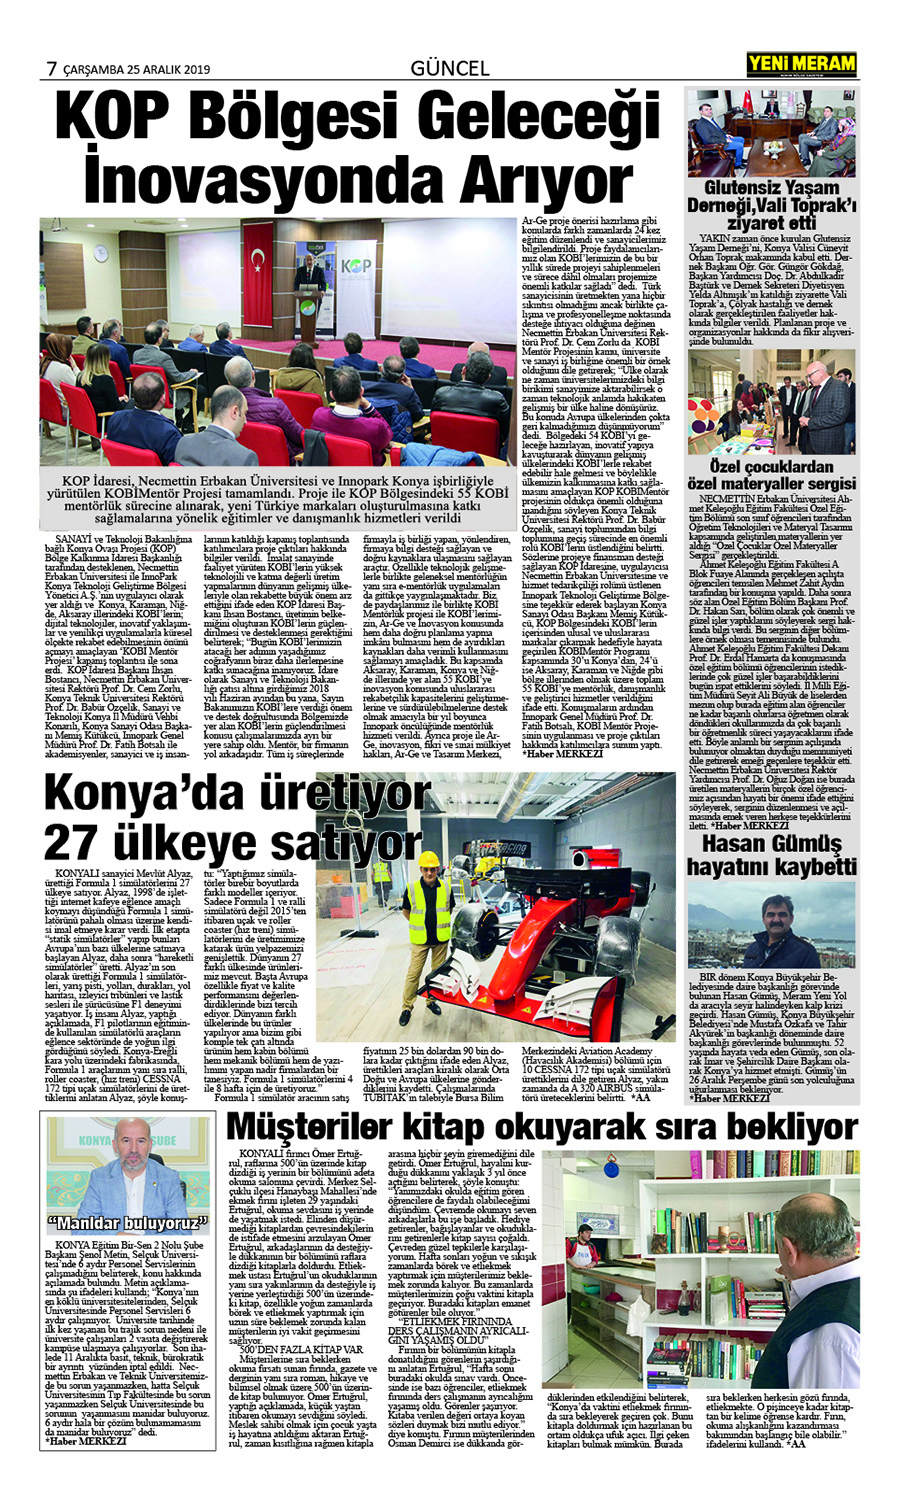 26 Aralık 2019 Yeni Meram Gazetesi